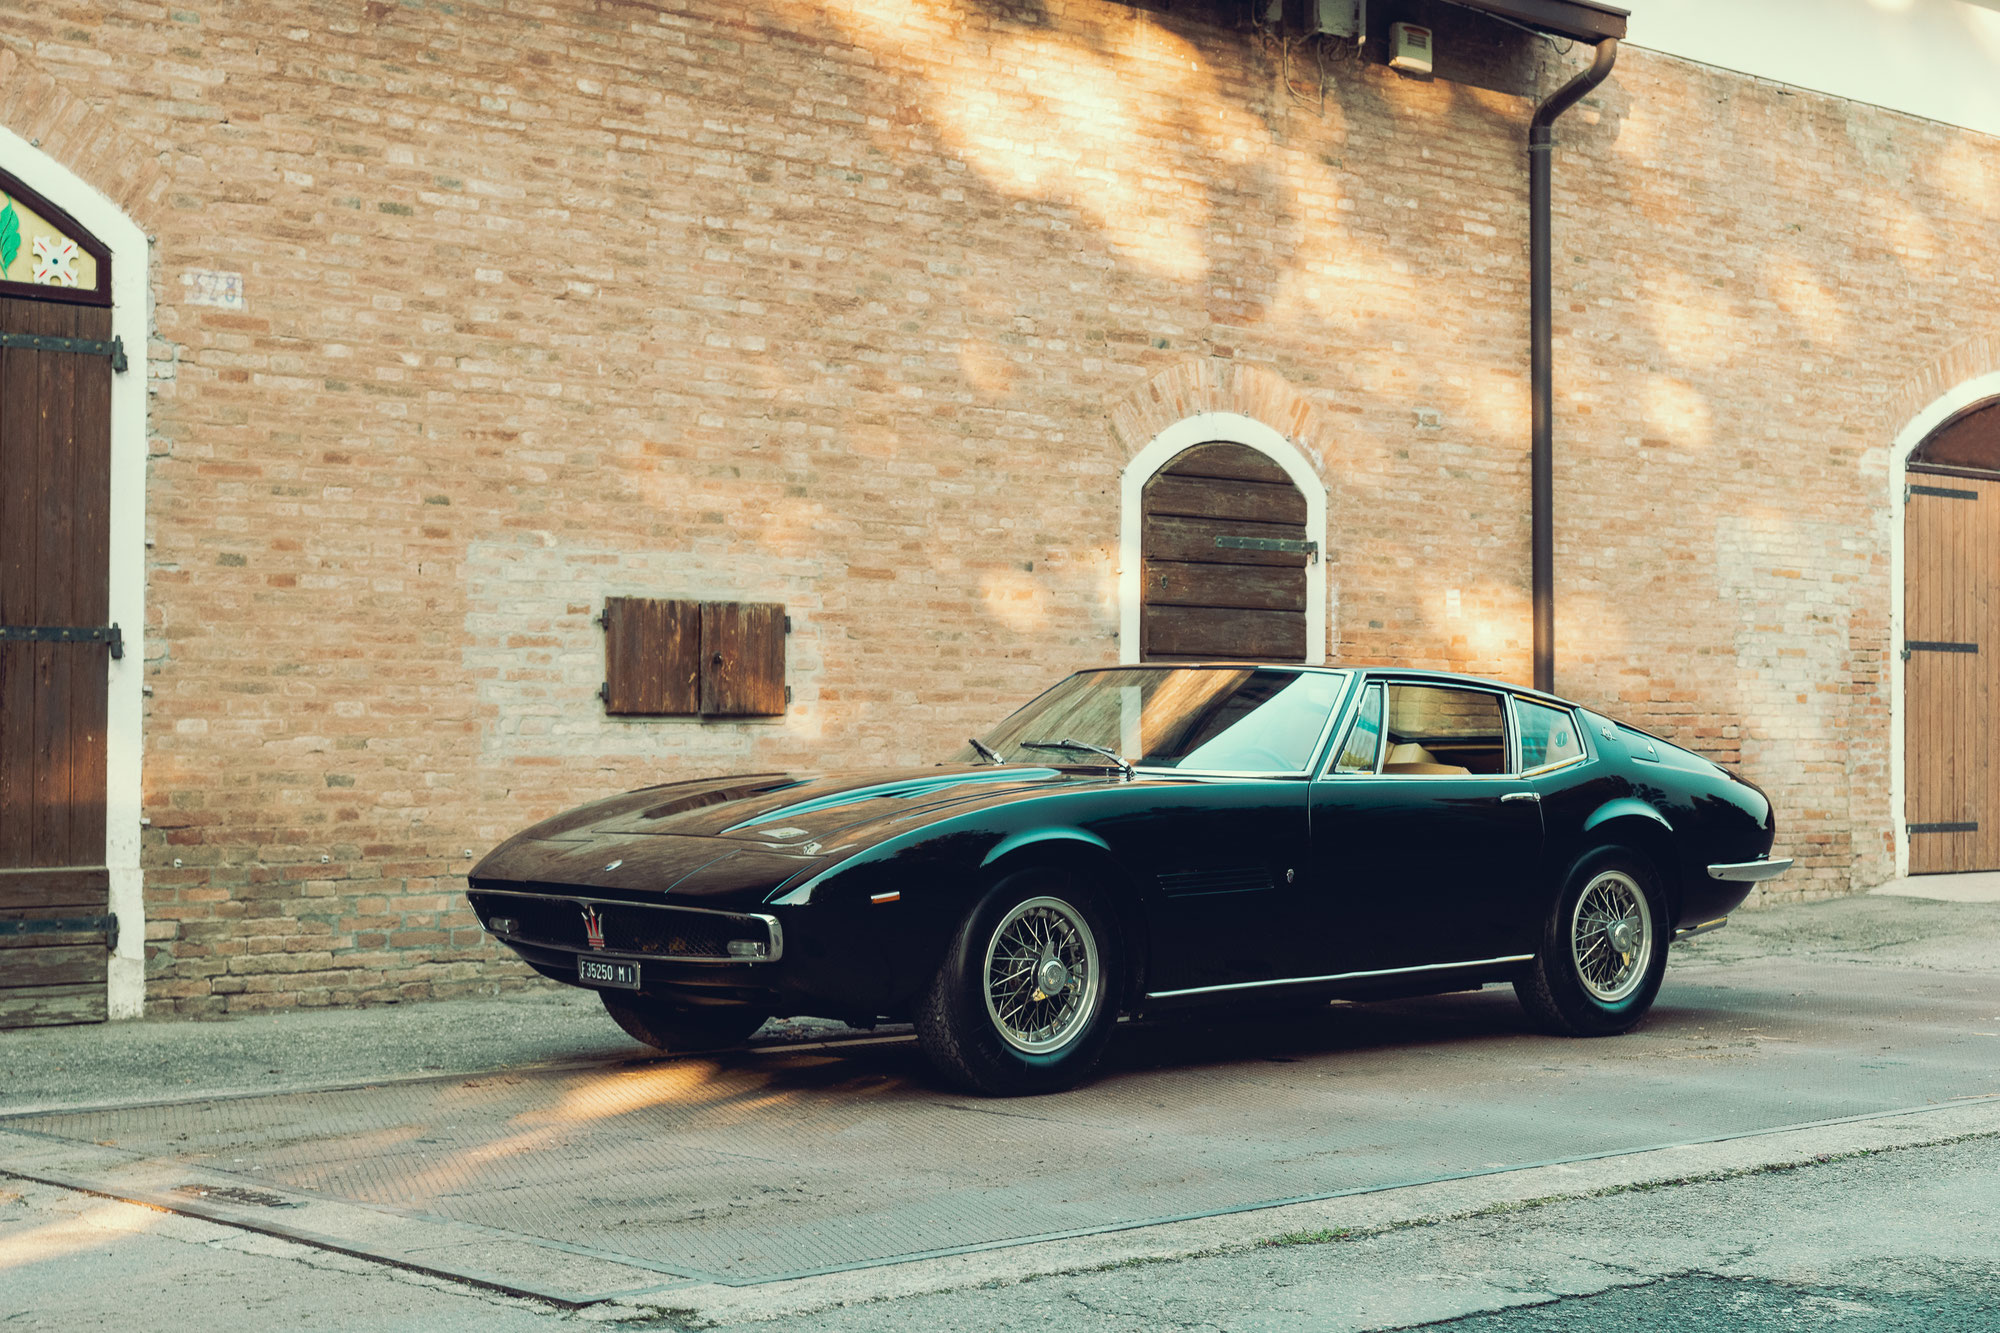 Der Maserati Ghibli: Ein starkes Auto, benannt nach einem starken Wind, feiert 55 Jahre